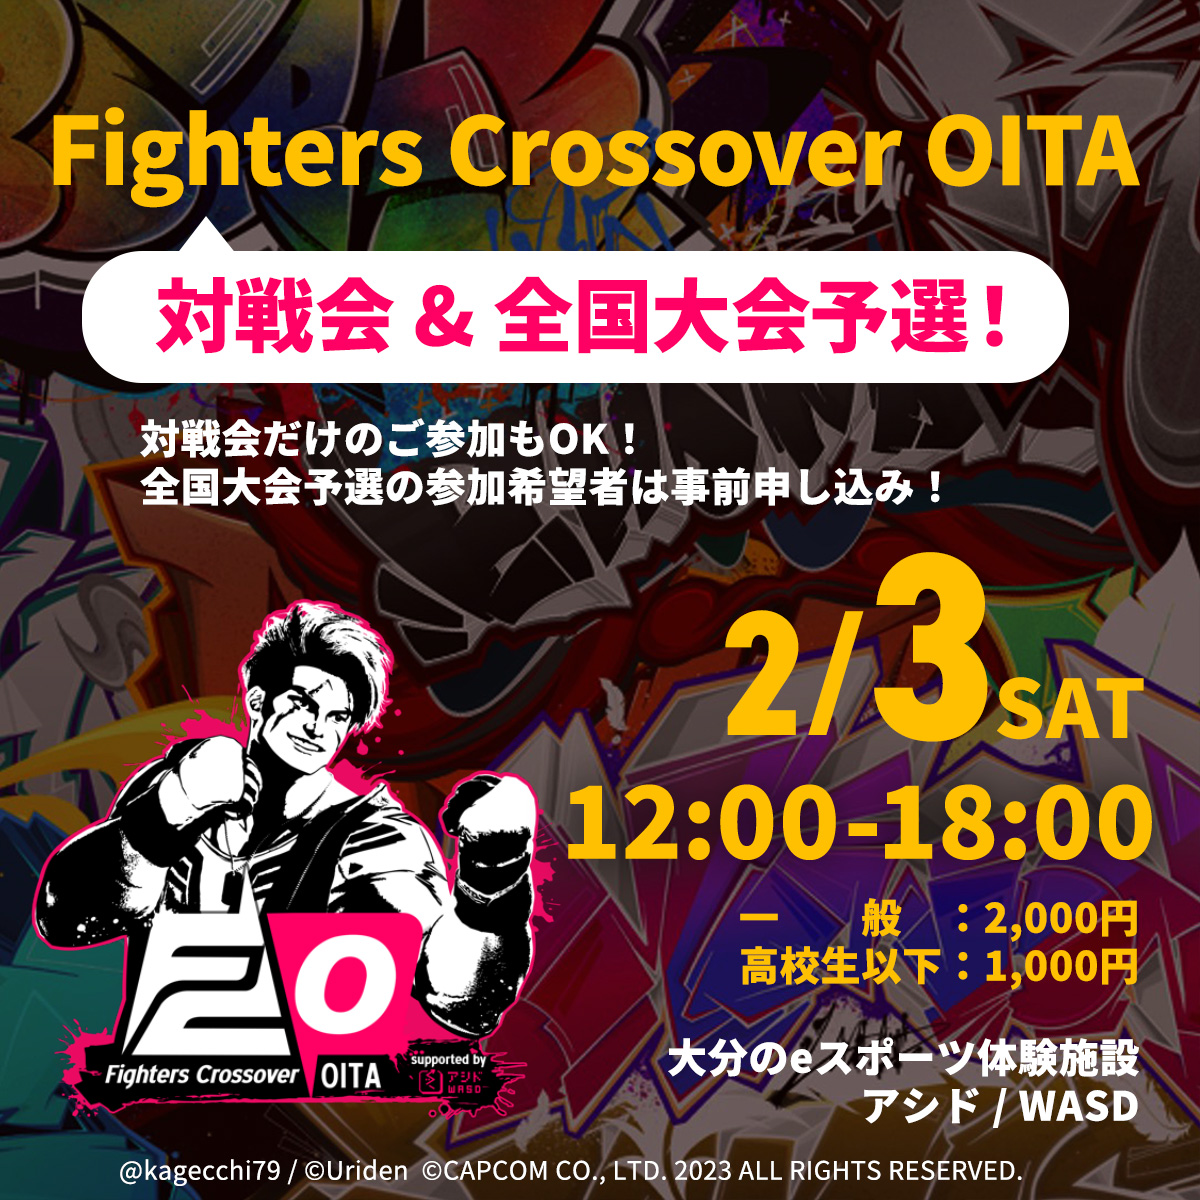 2/3(土) Fighters Crossover OITA 対戦会&全国大会予選【終了しました】